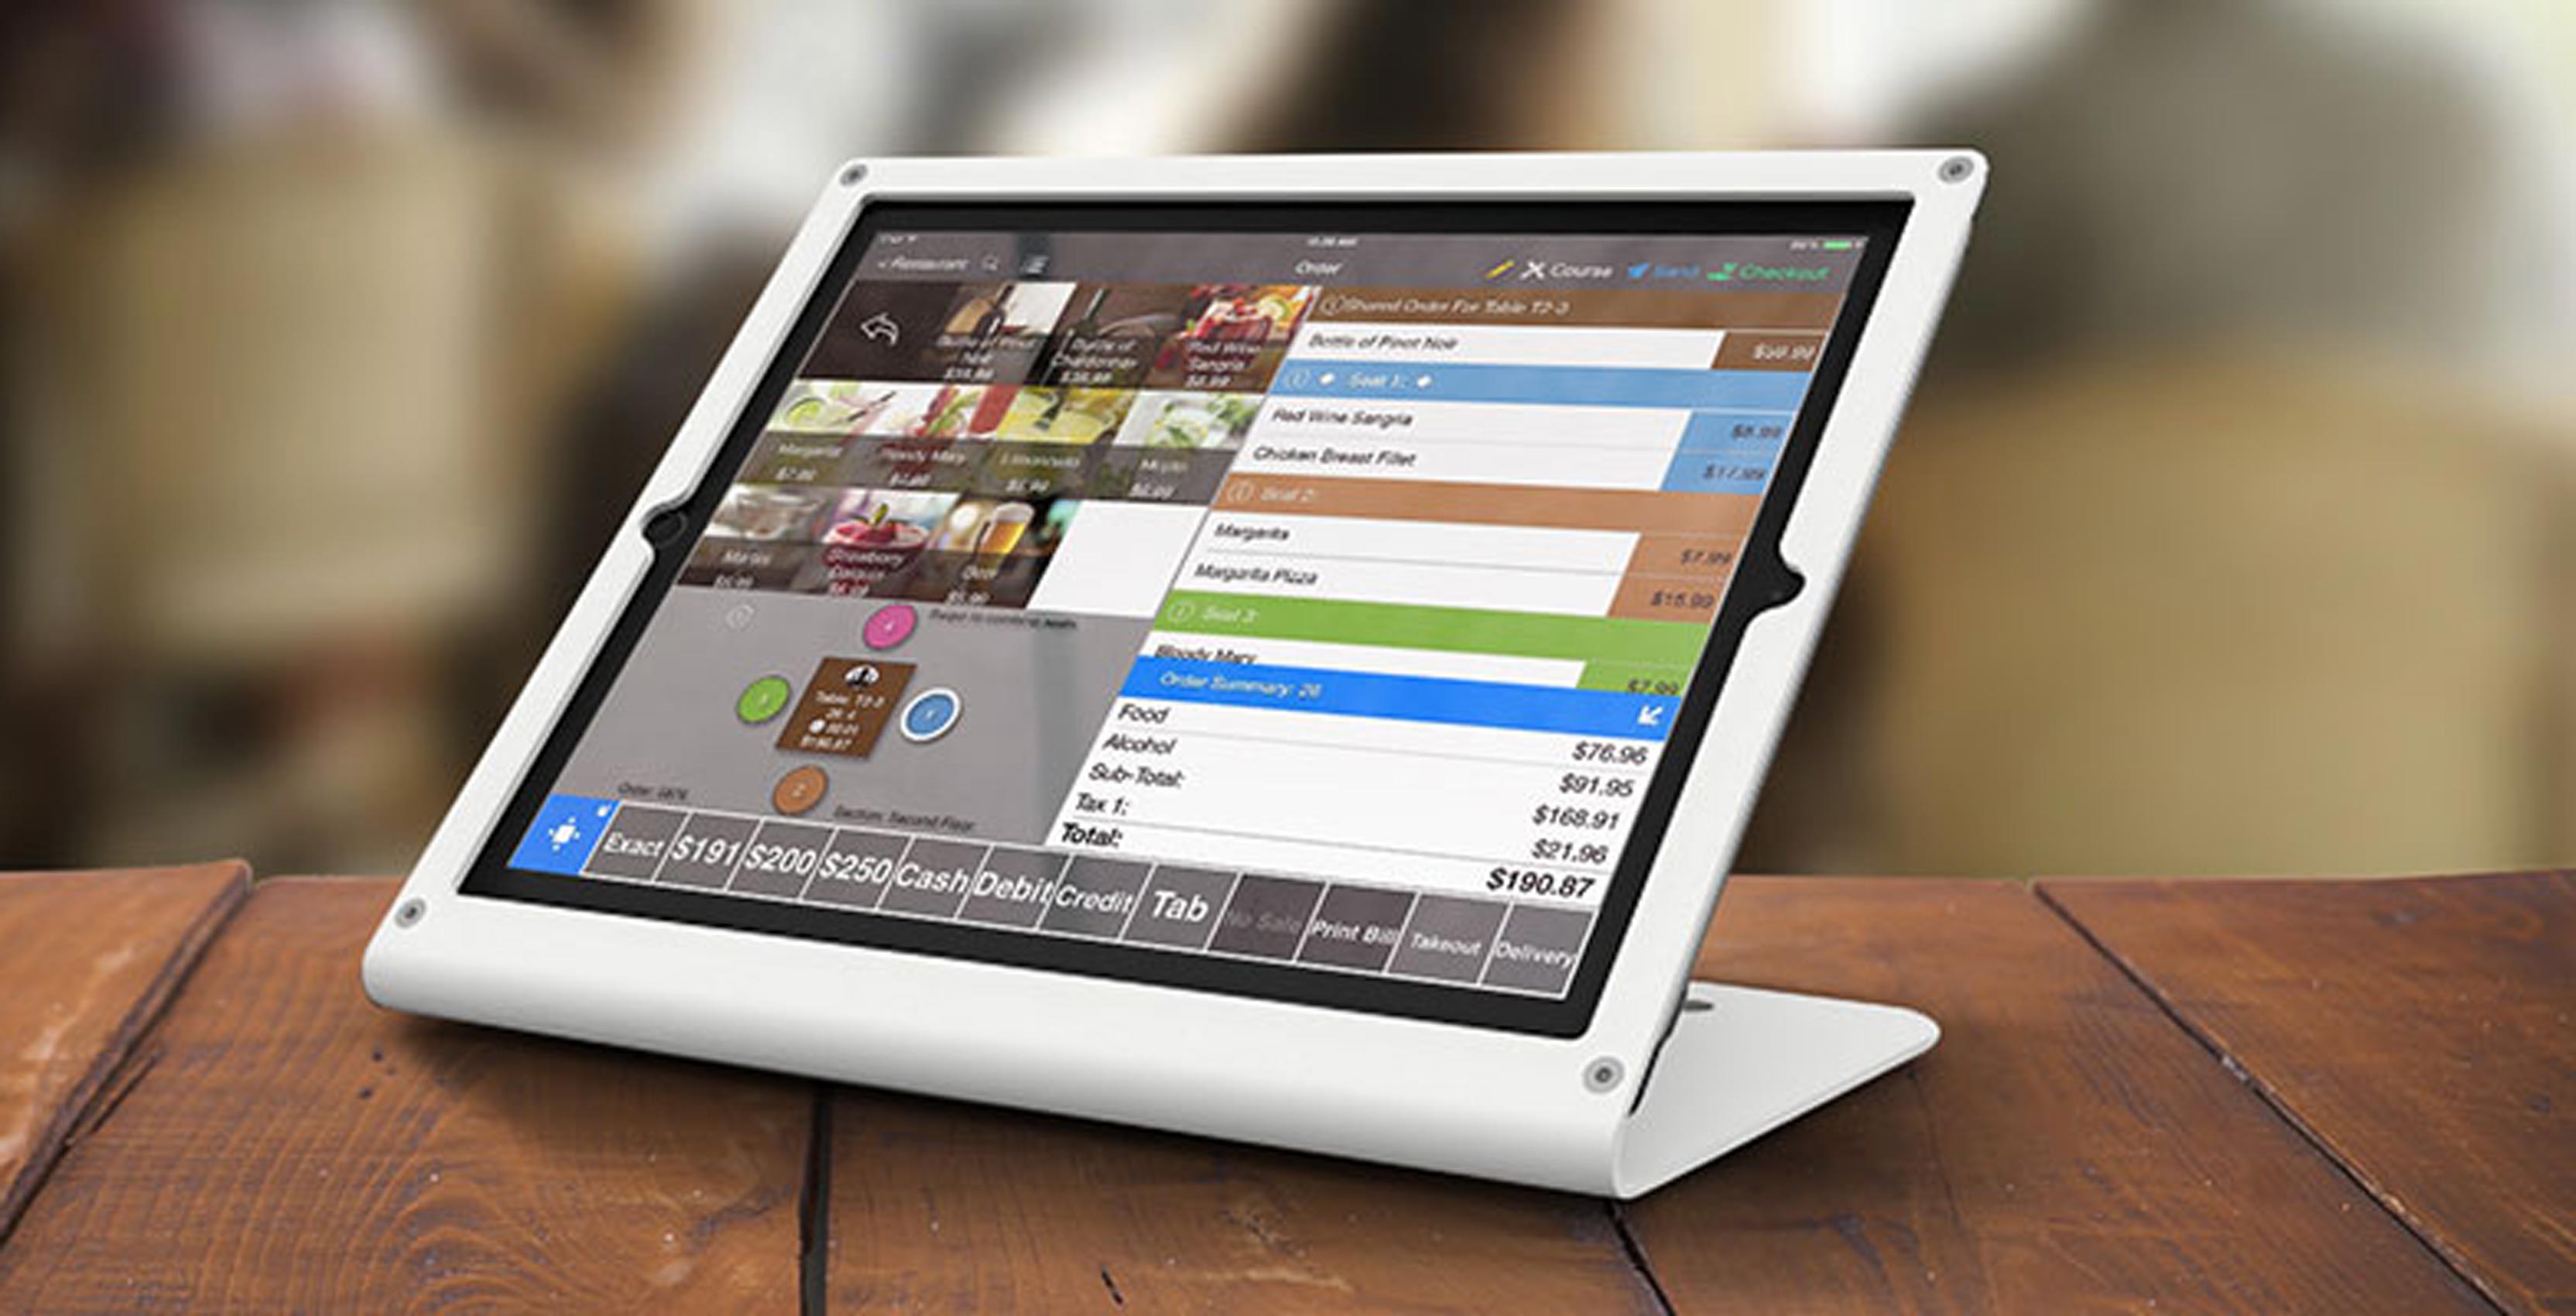 TouchBistro app on iPad